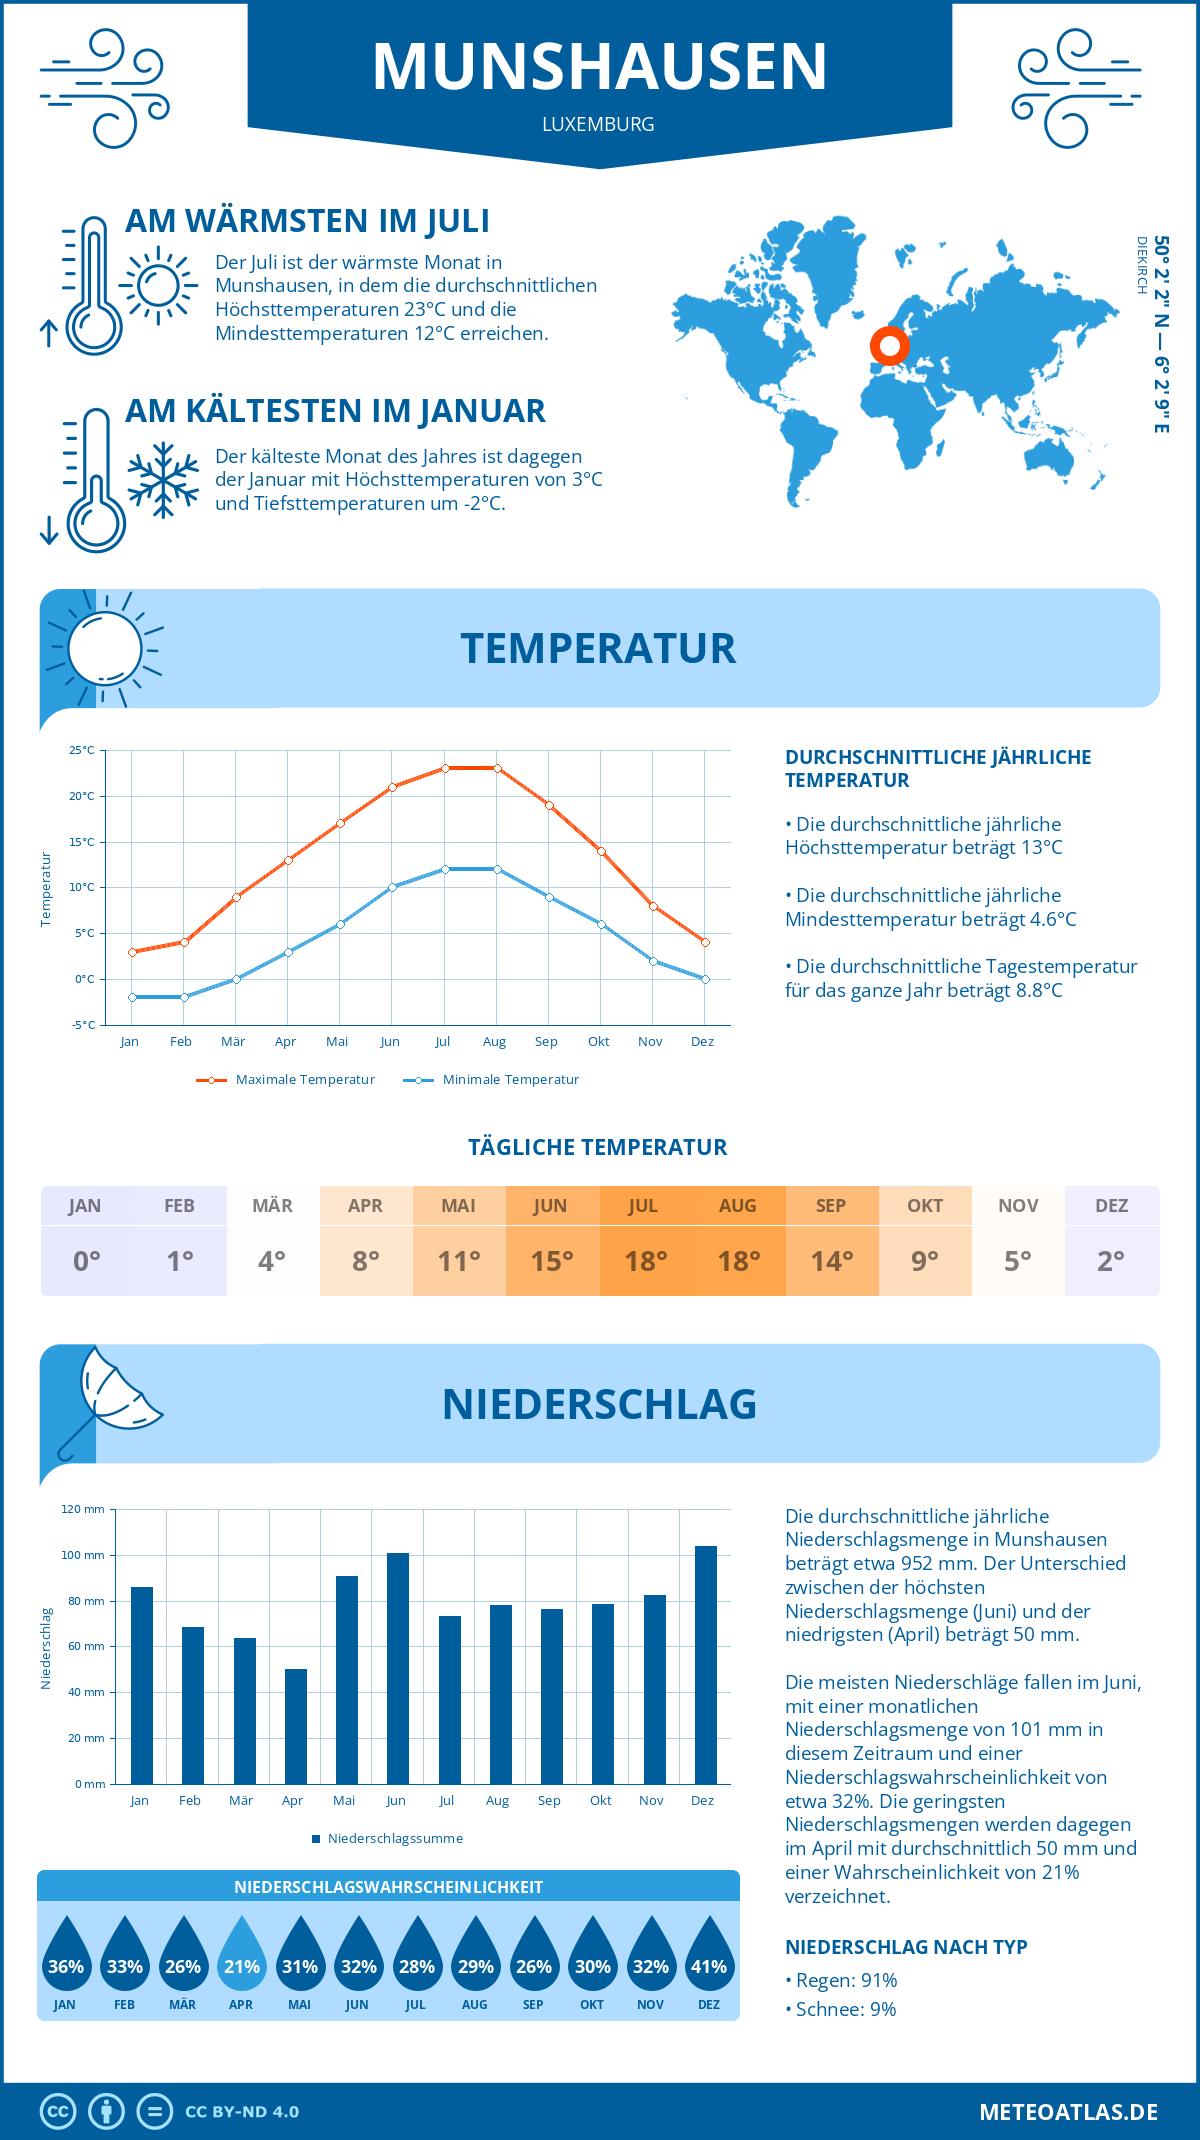 Wetter Munshausen (Luxemburg) - Temperatur und Niederschlag